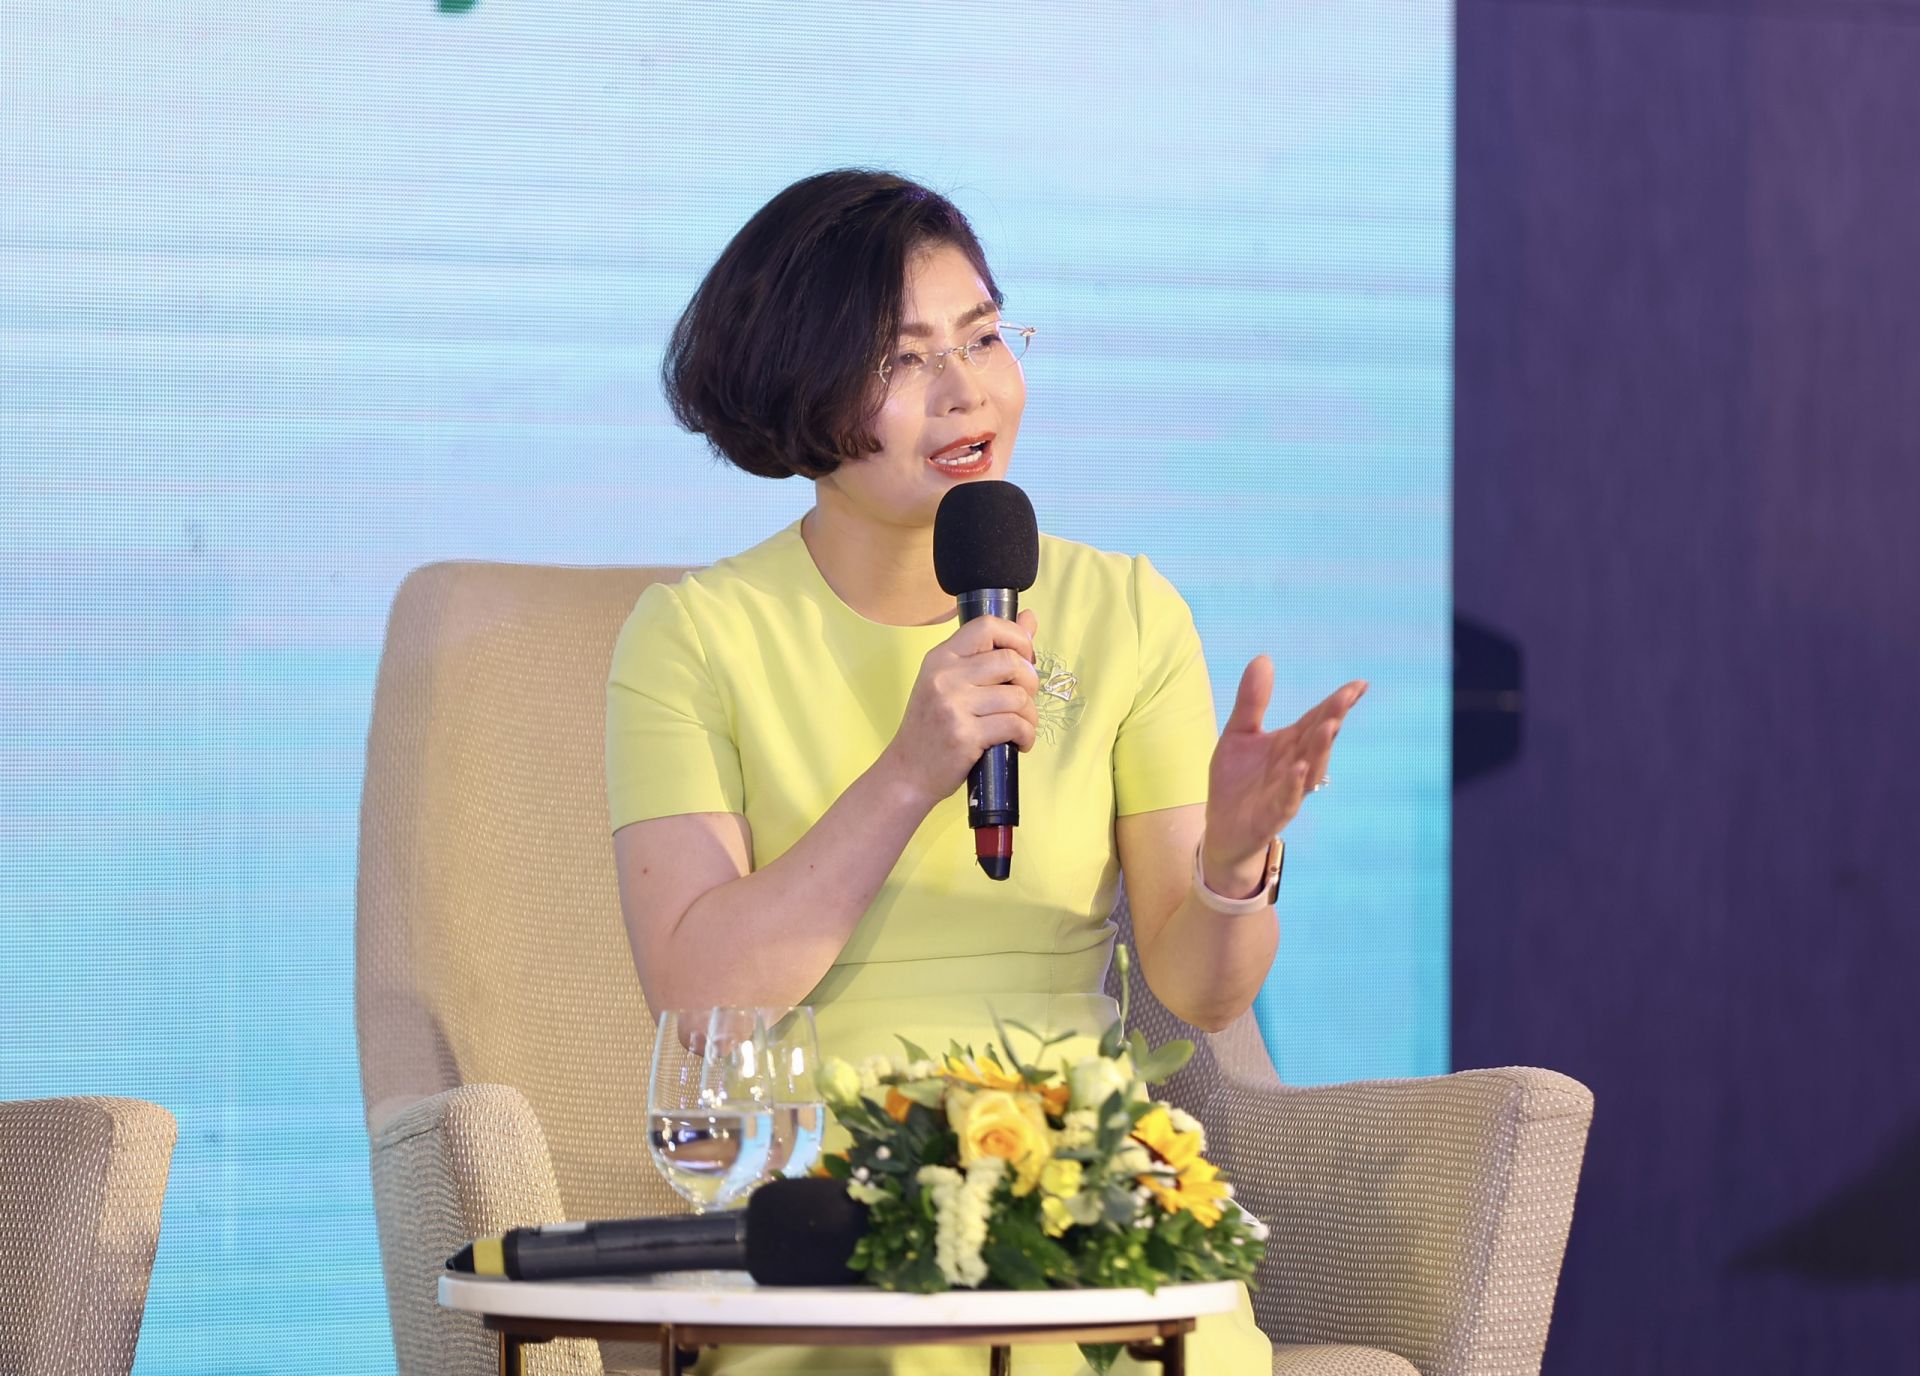 Bà Trần Nguyện, Trưởng ban Kinh doanh, Tập đoàn Sun Group chia sẻ tại hội nghị.